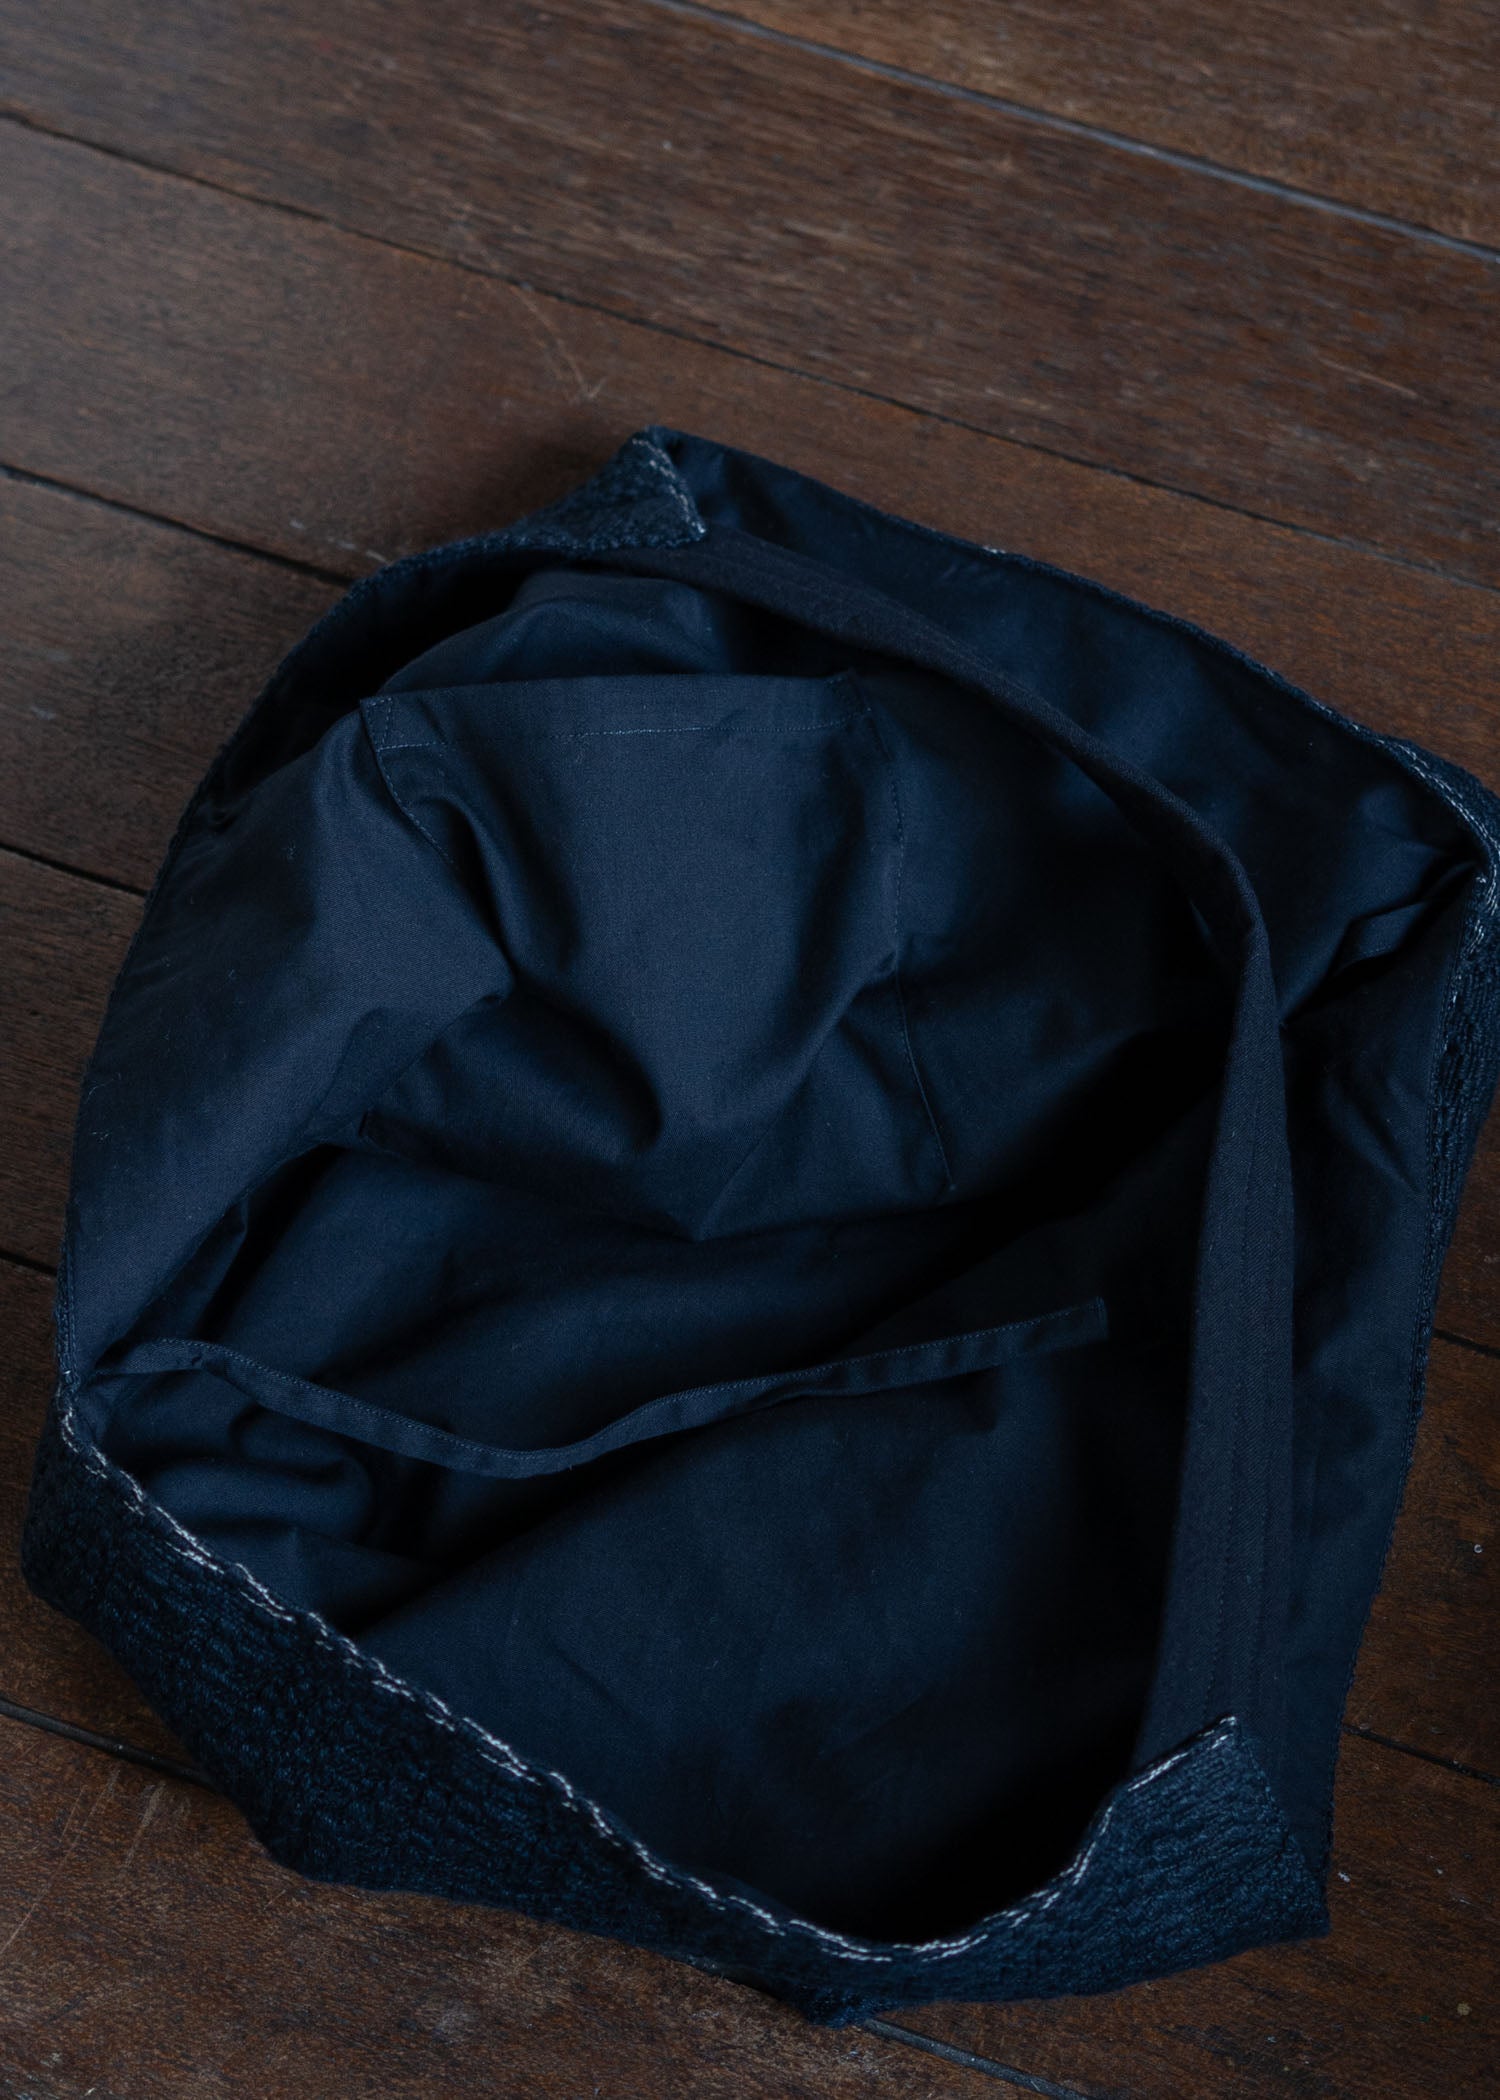 JAN-JAN VAN ESSCHE BAG#36TSUNO BUKURO STYLE HAND WOVEN BAG BROKEN WAVES BLACK